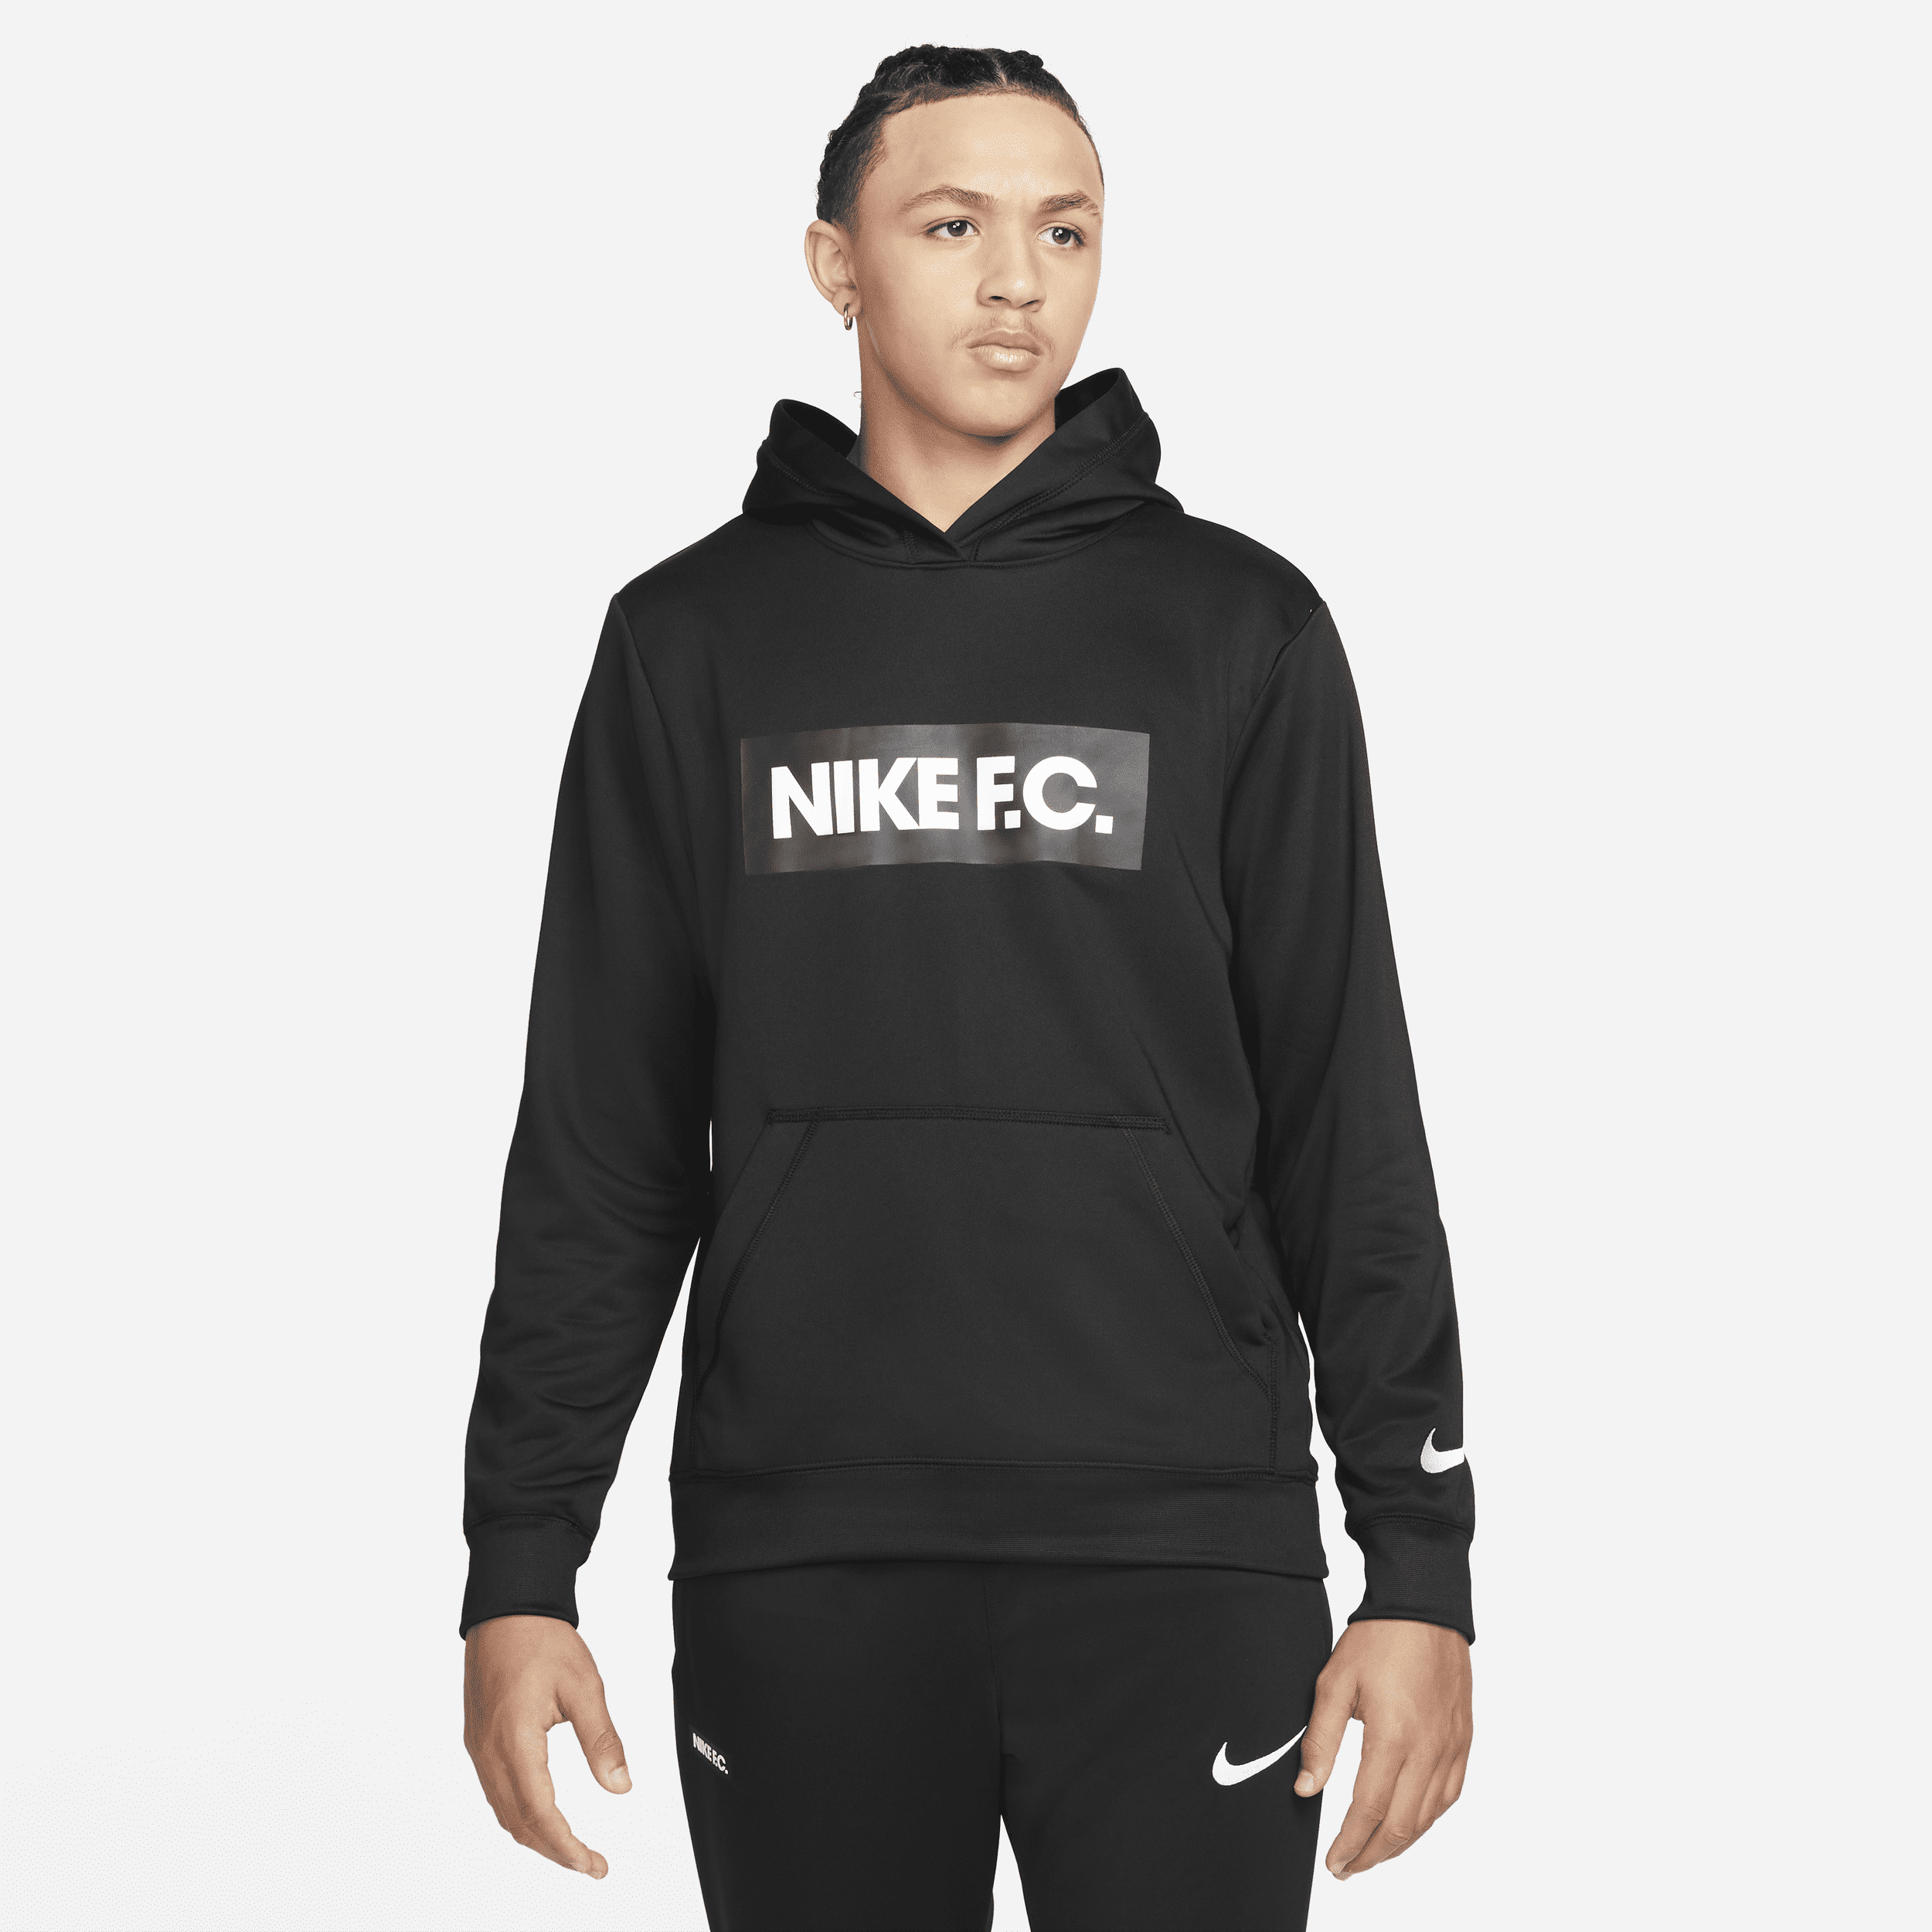 Nike F.C. Sudadera con capucha de fútbol - Hombre - Negro